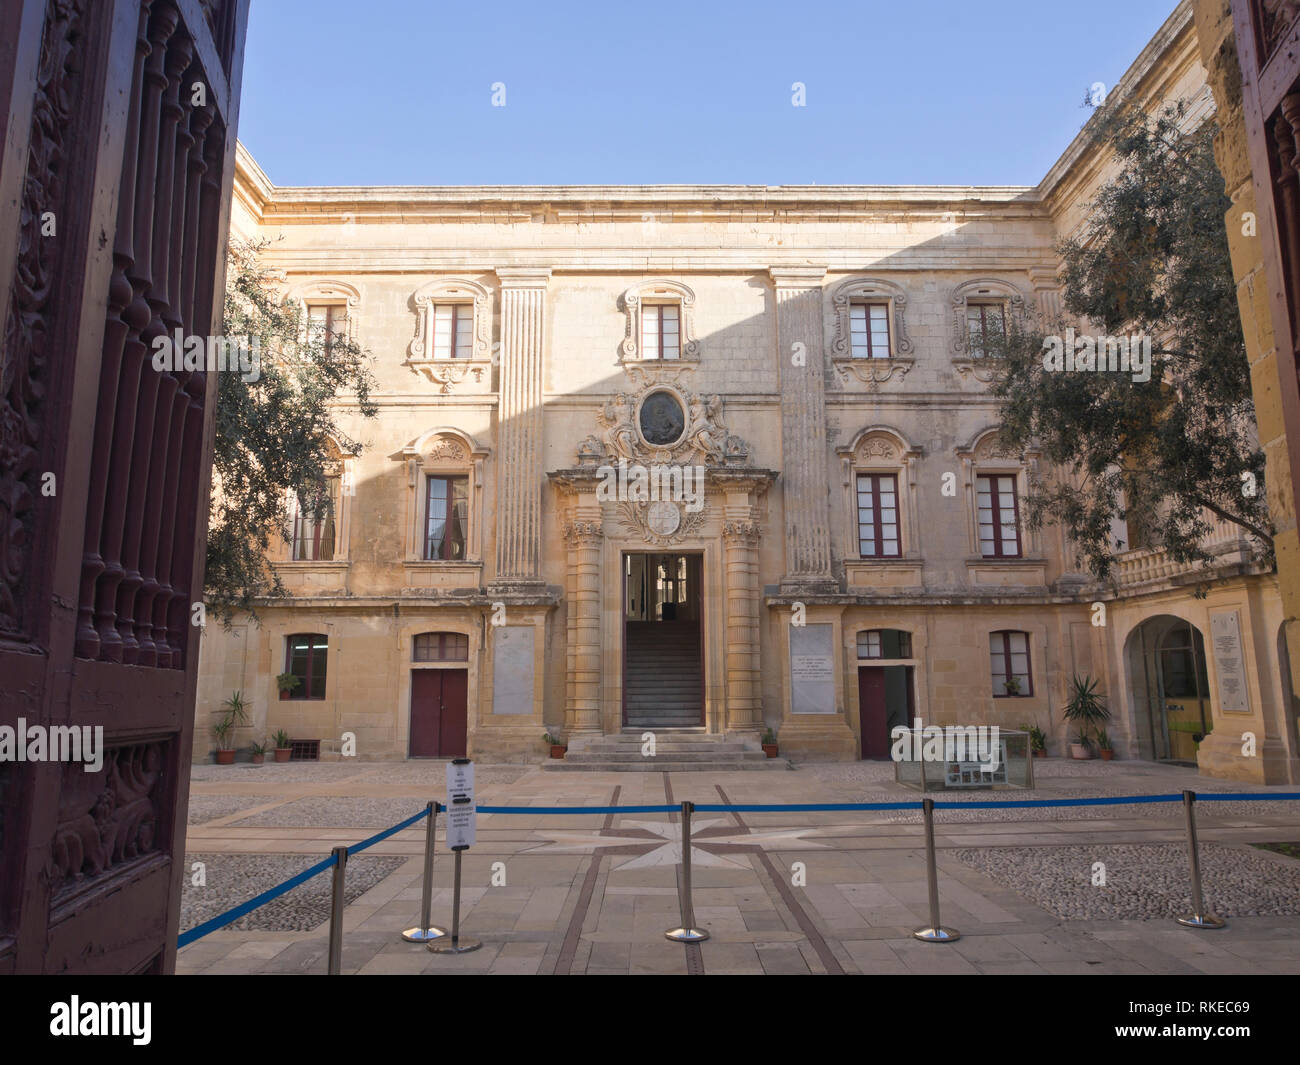 Entrada al museo de la ciudad amurallada de Mdina, la antigua capital de Malta Foto de stock